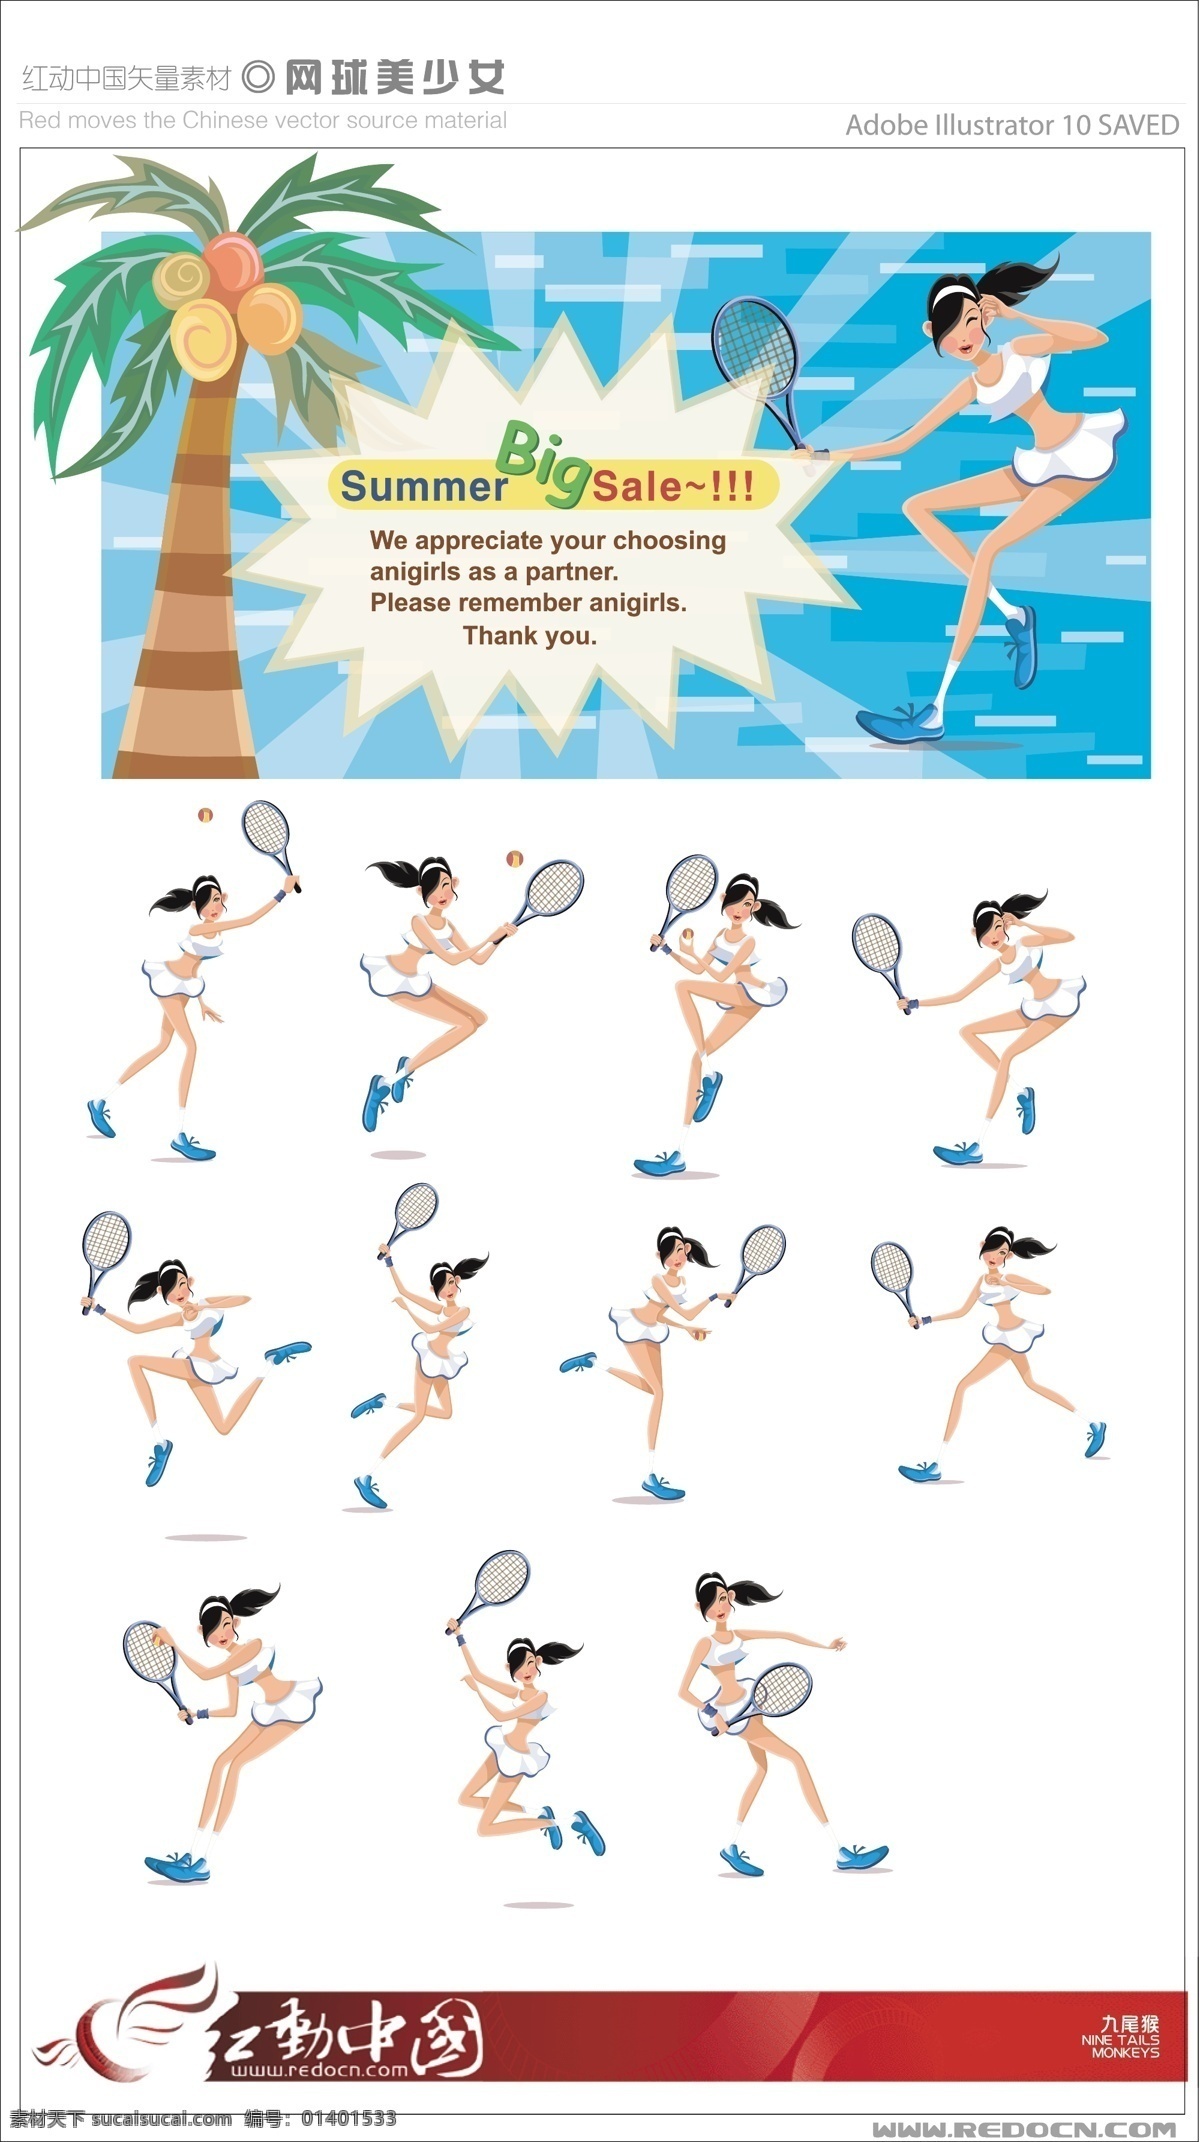 网球 美 少女 矢量图库 体育运动 文化艺术 矢量 模板下载 网球美少女 日常生活